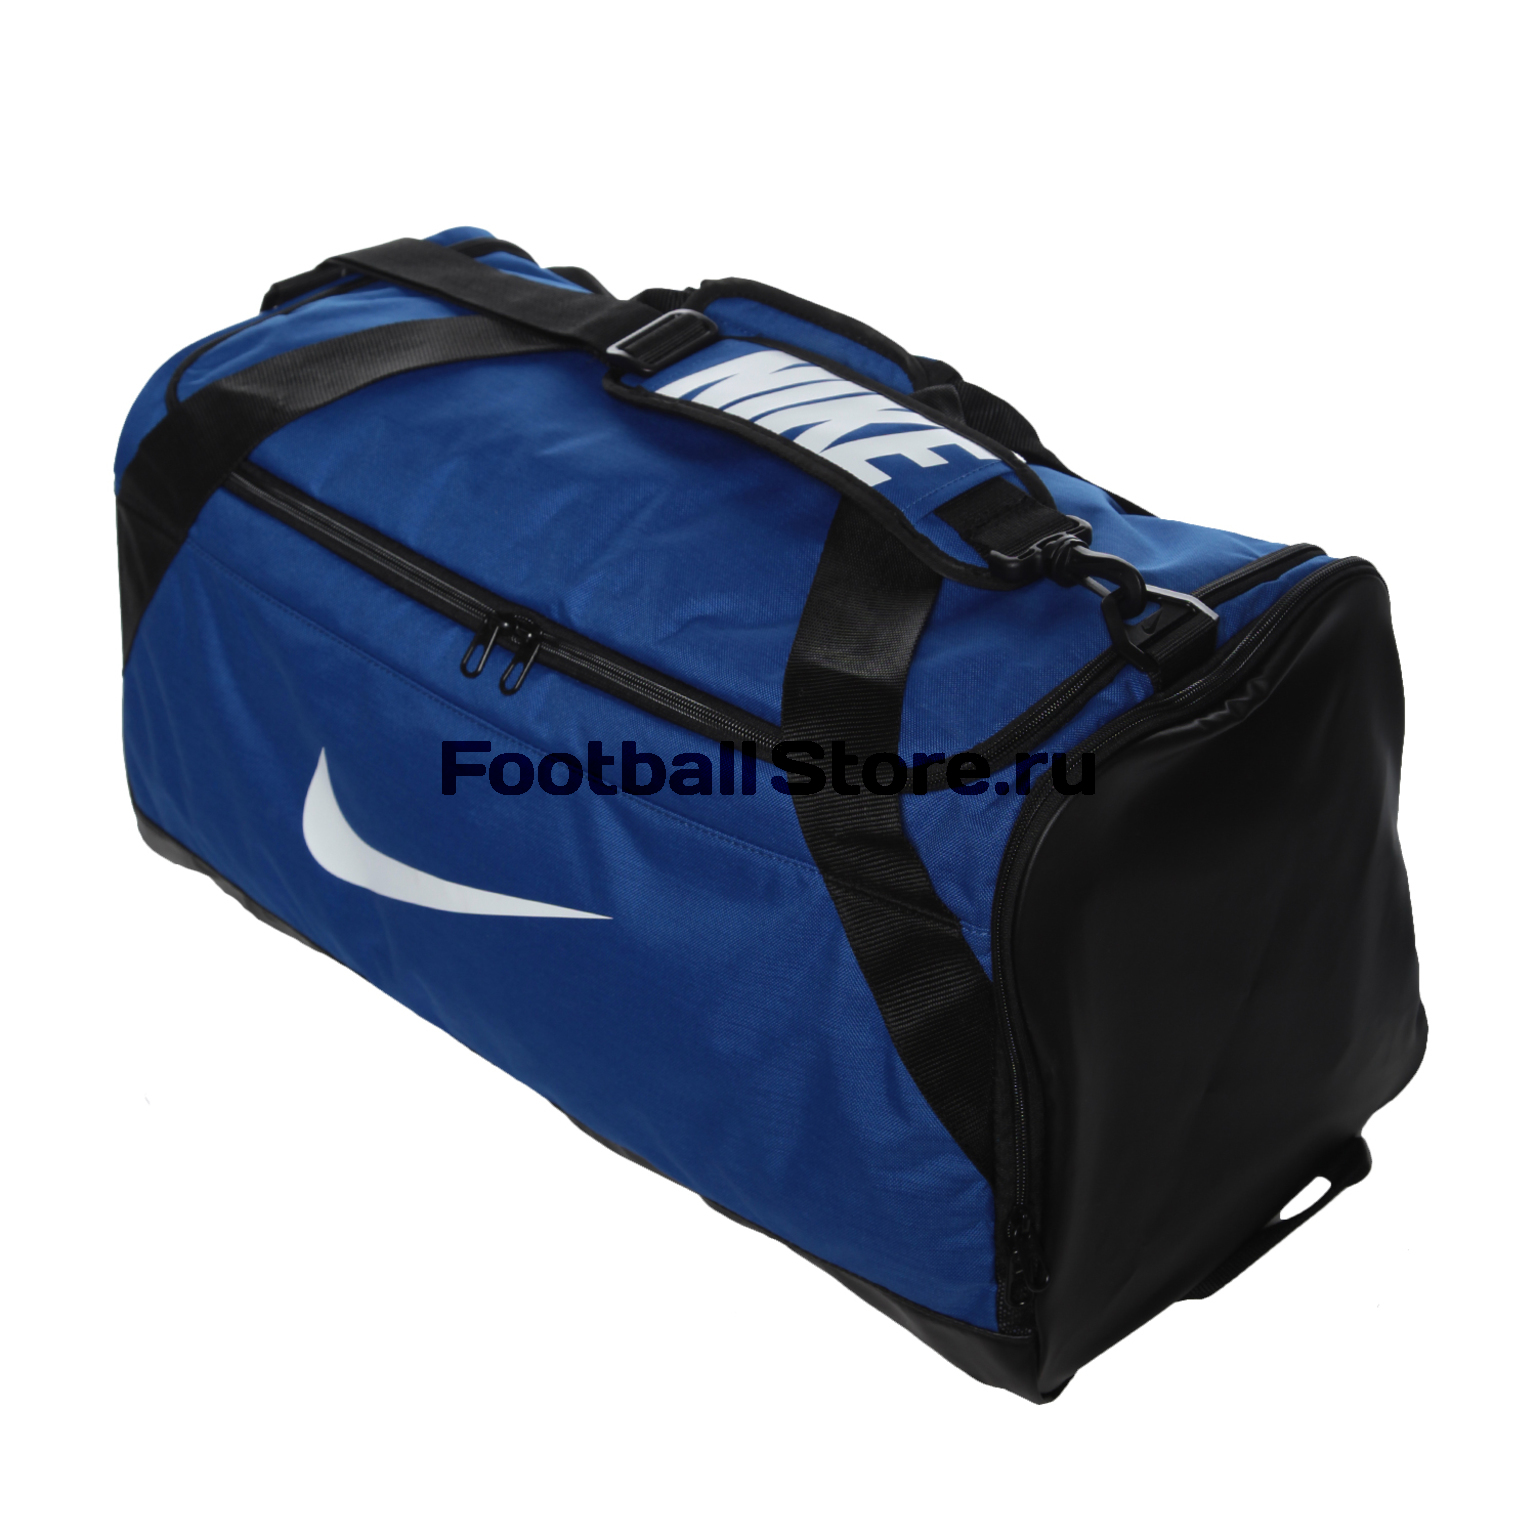 Сумка Nike Brasilia M Duffel Bag BA5334-480